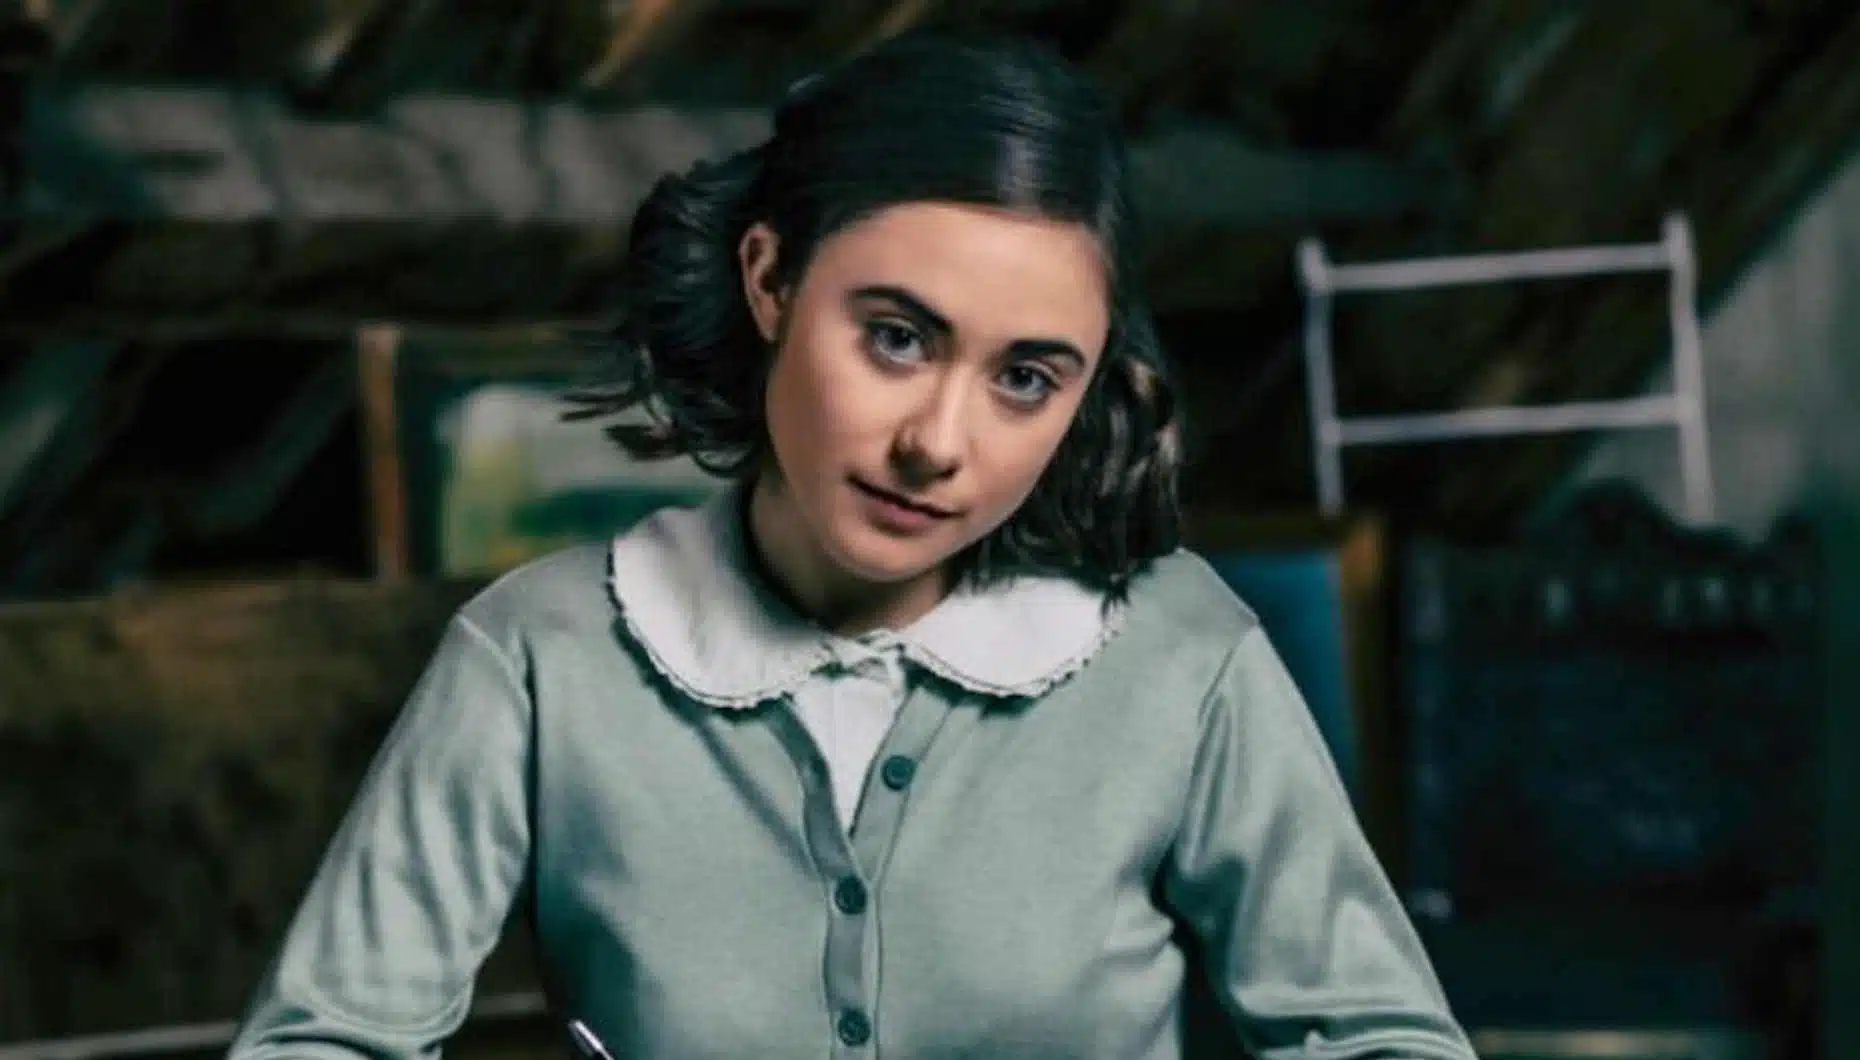 Beatriz Frazão, Anne Frank